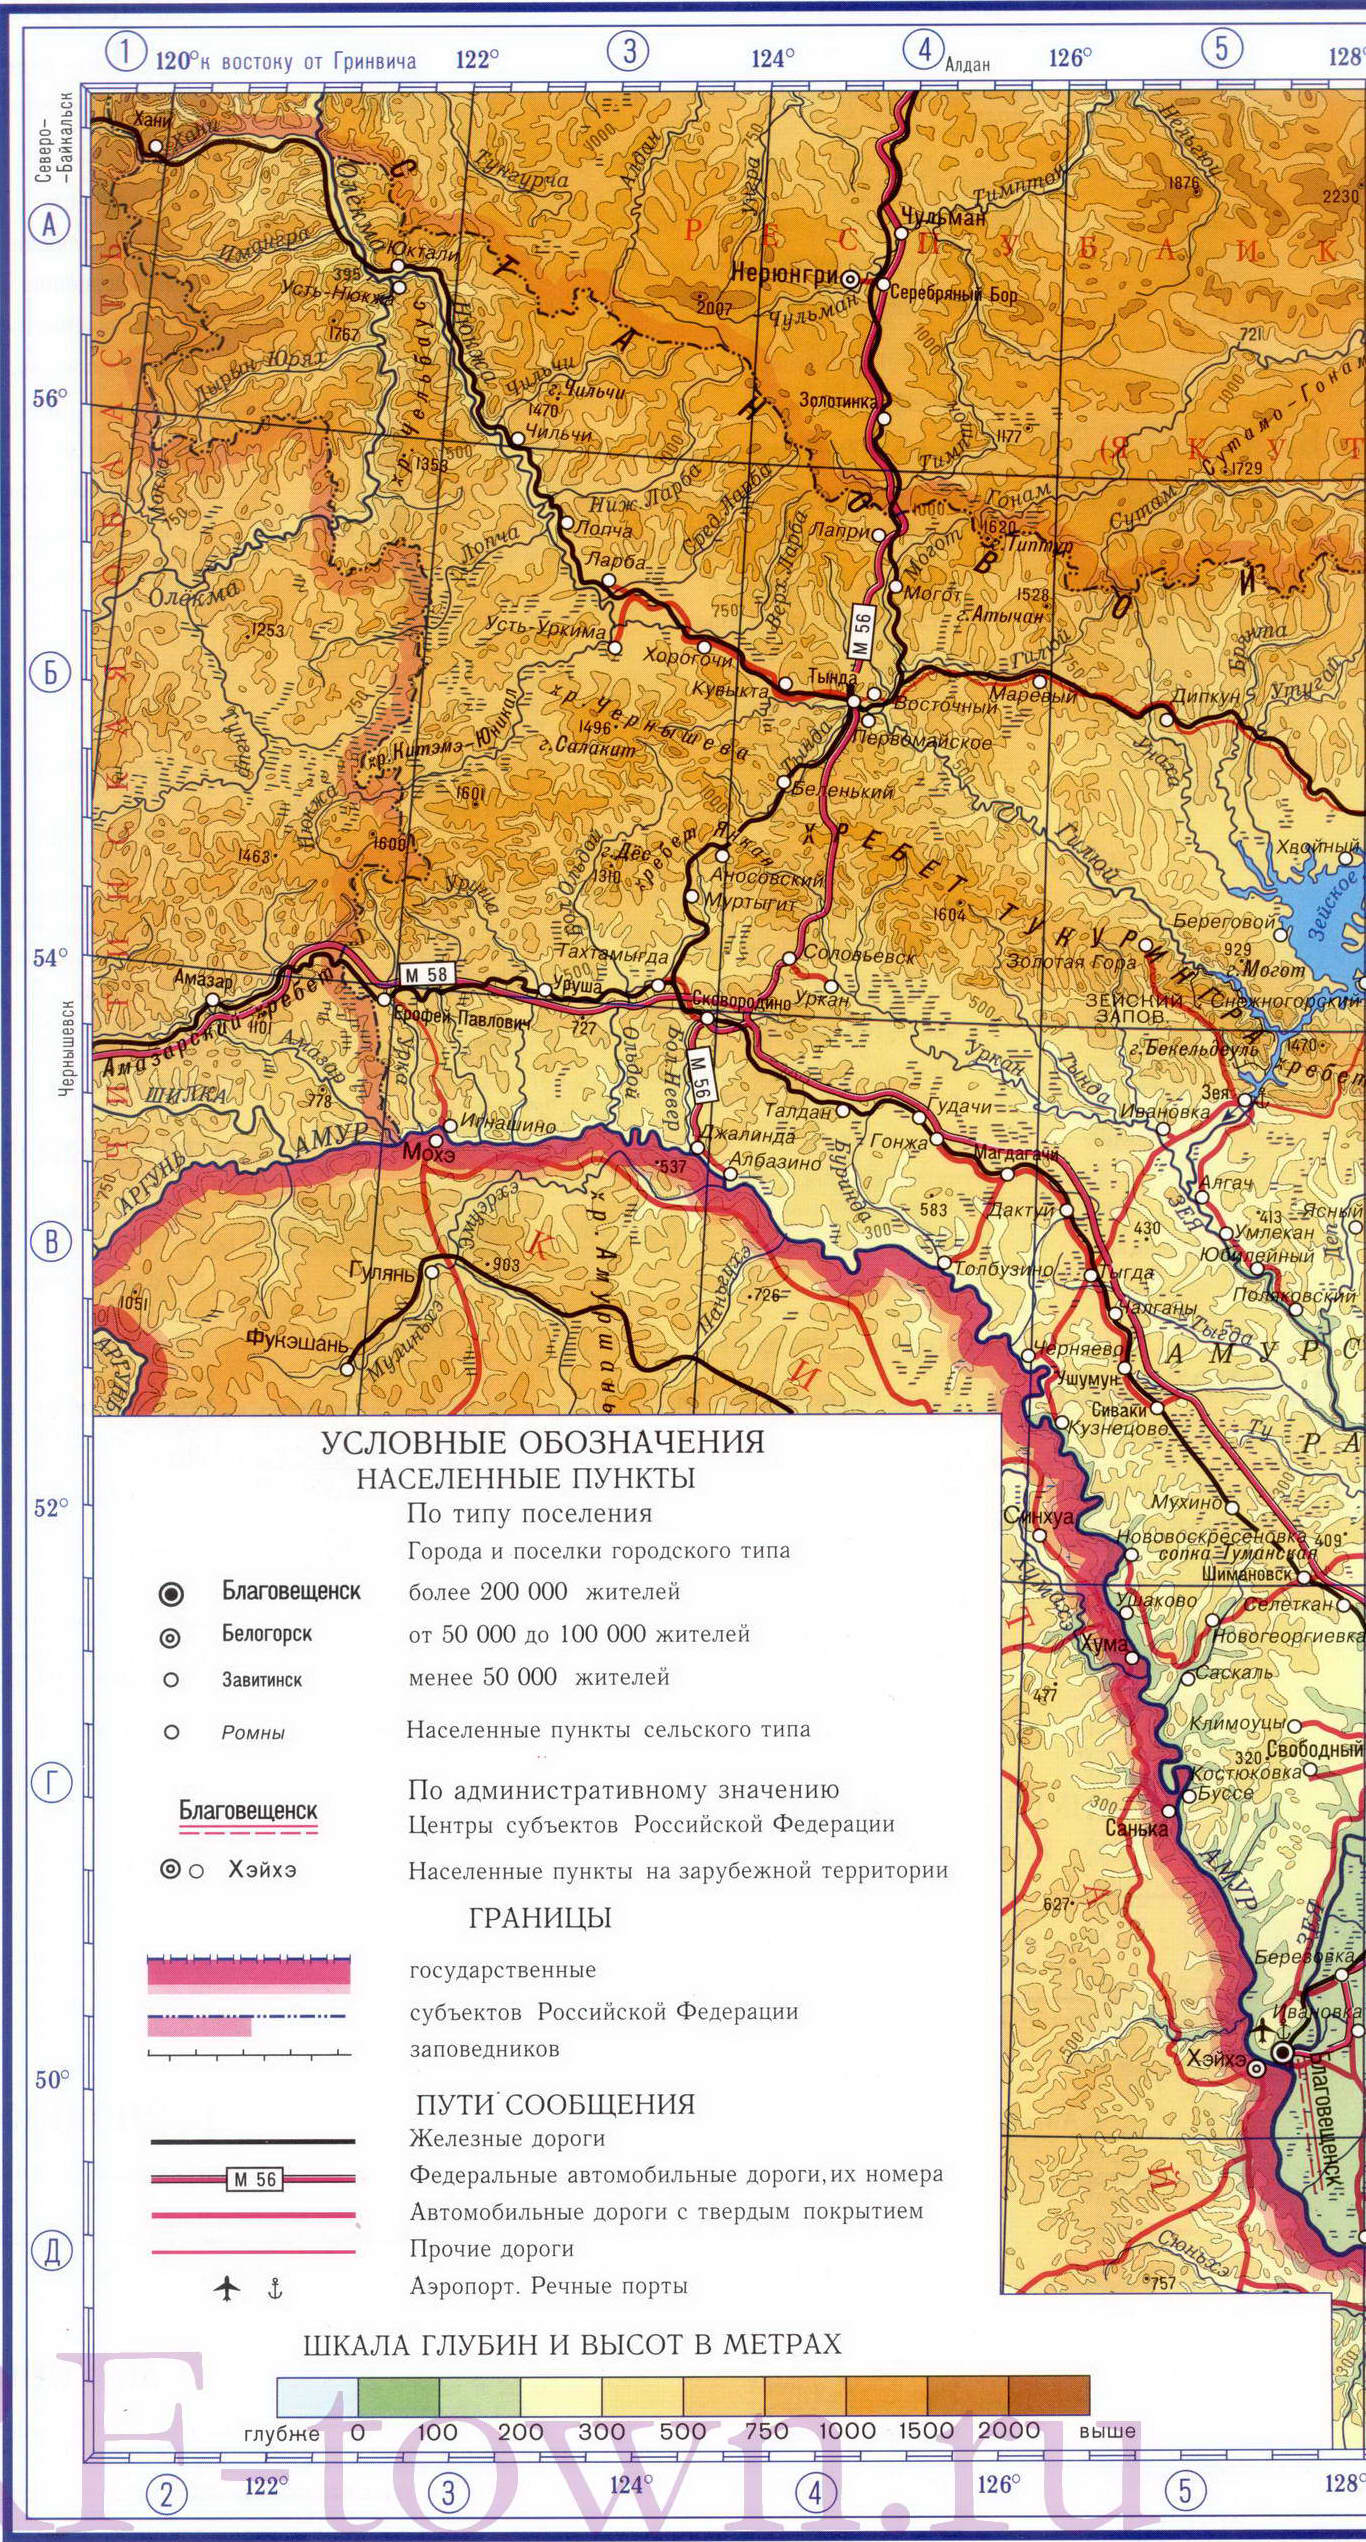 Шановні читачі, на моєму блозі є основнаястатья, де ви знайдете не тільки картивсех суб'єктів Російської Федерації, але також і карти річок, озер, міст і багато ще чого